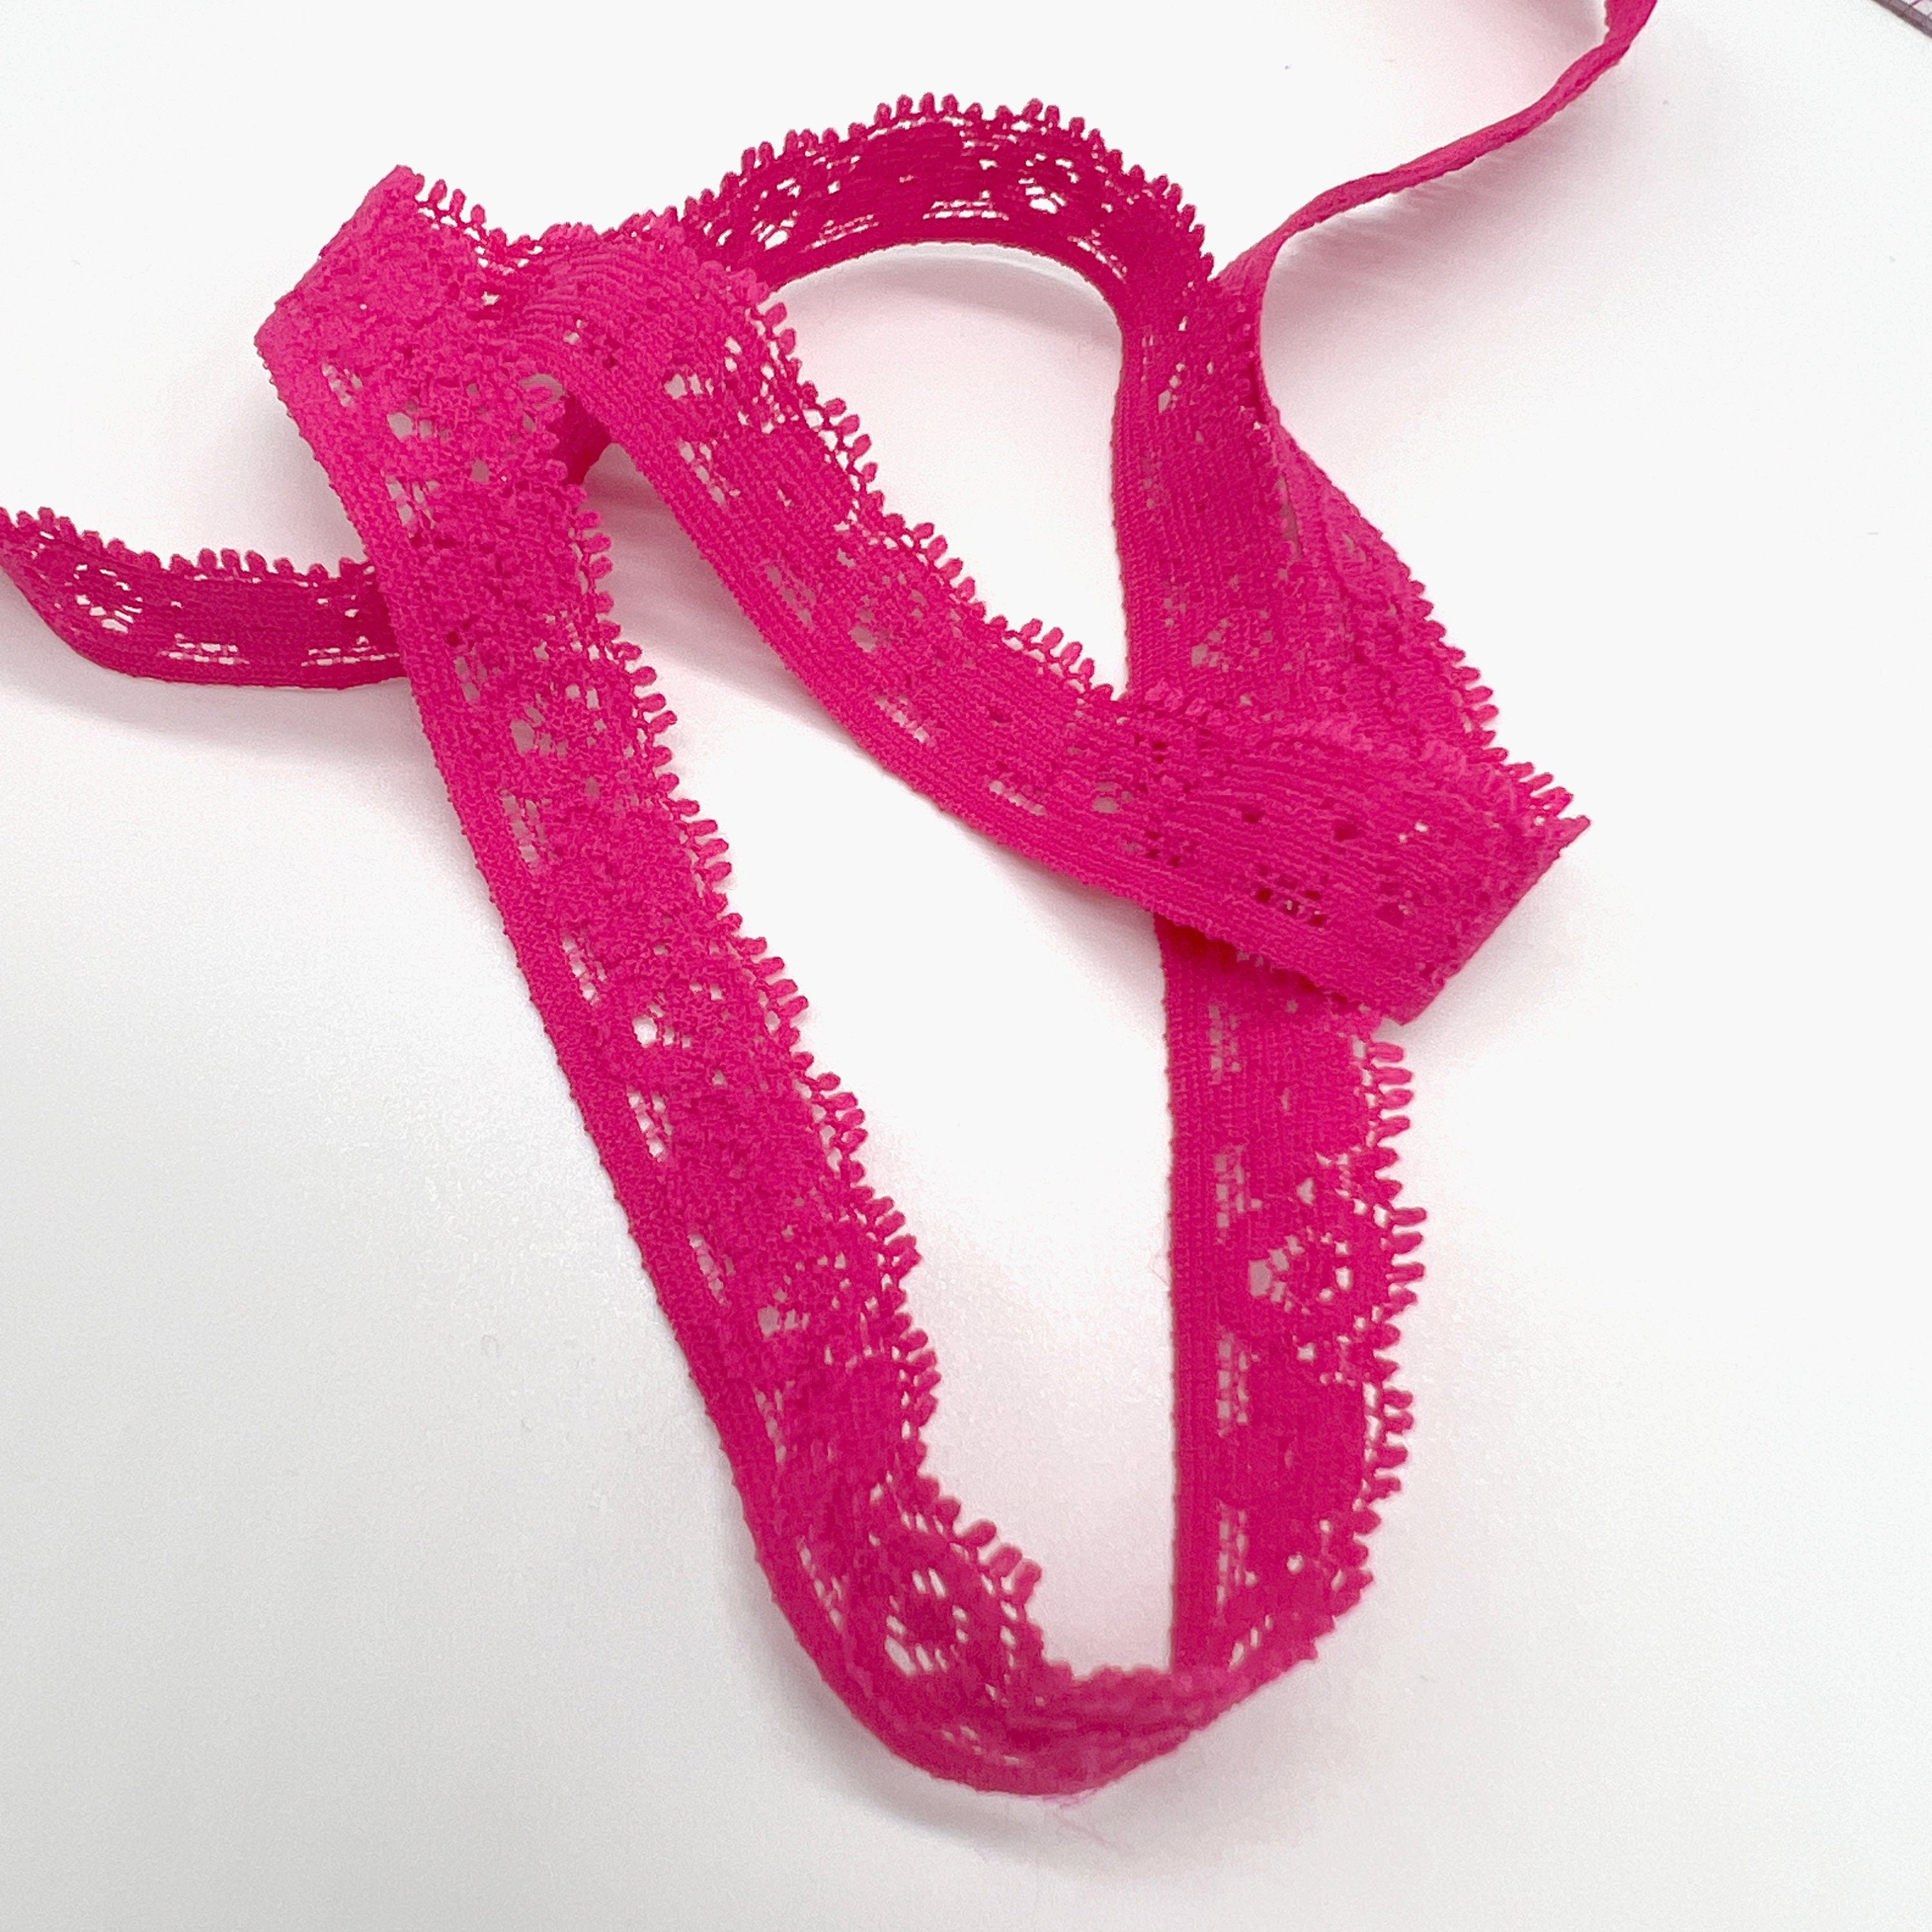 1/2" (12mm) Stretch Narrow Lace Trim, Decorative Elastic in Pink– 5 yards - Stitch Love Studio